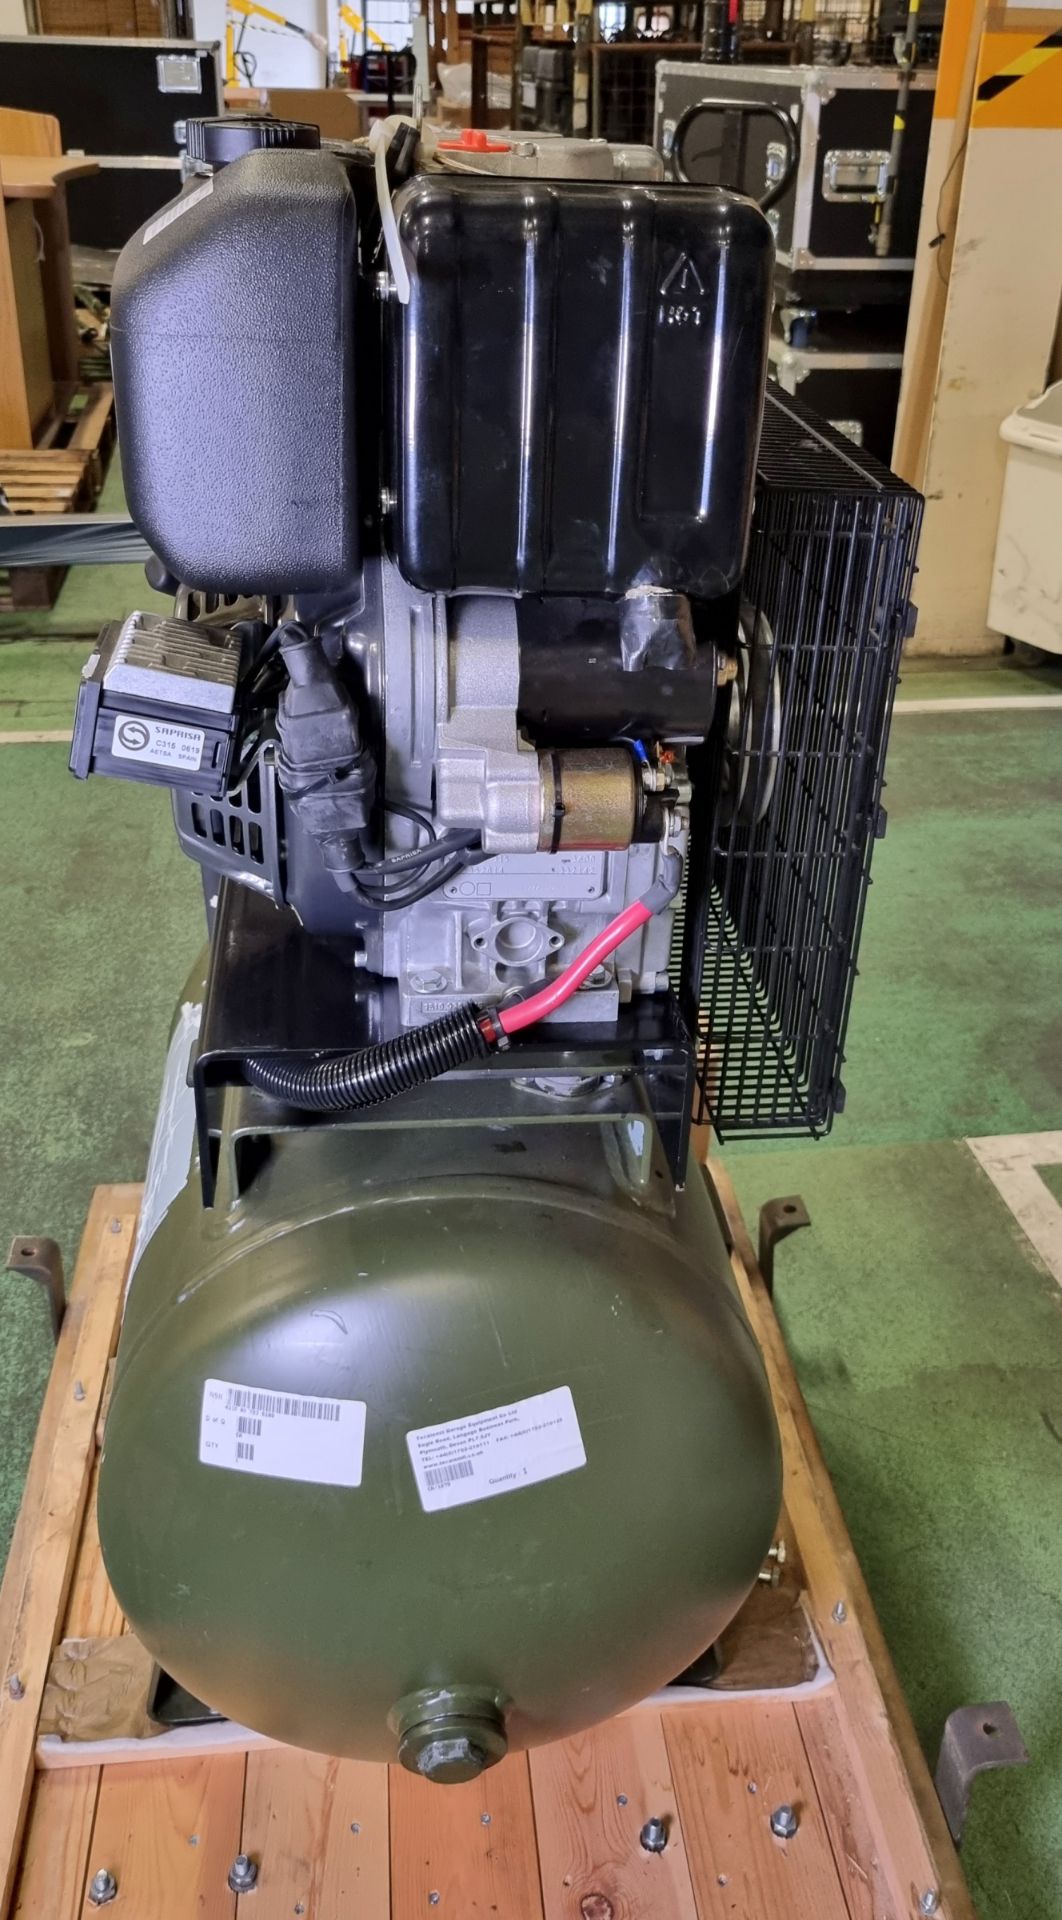 Diesel powered workshop compressor - Lombardini 15 LD 315 diesel engine - Serial No. 5352814 - Image 6 of 15